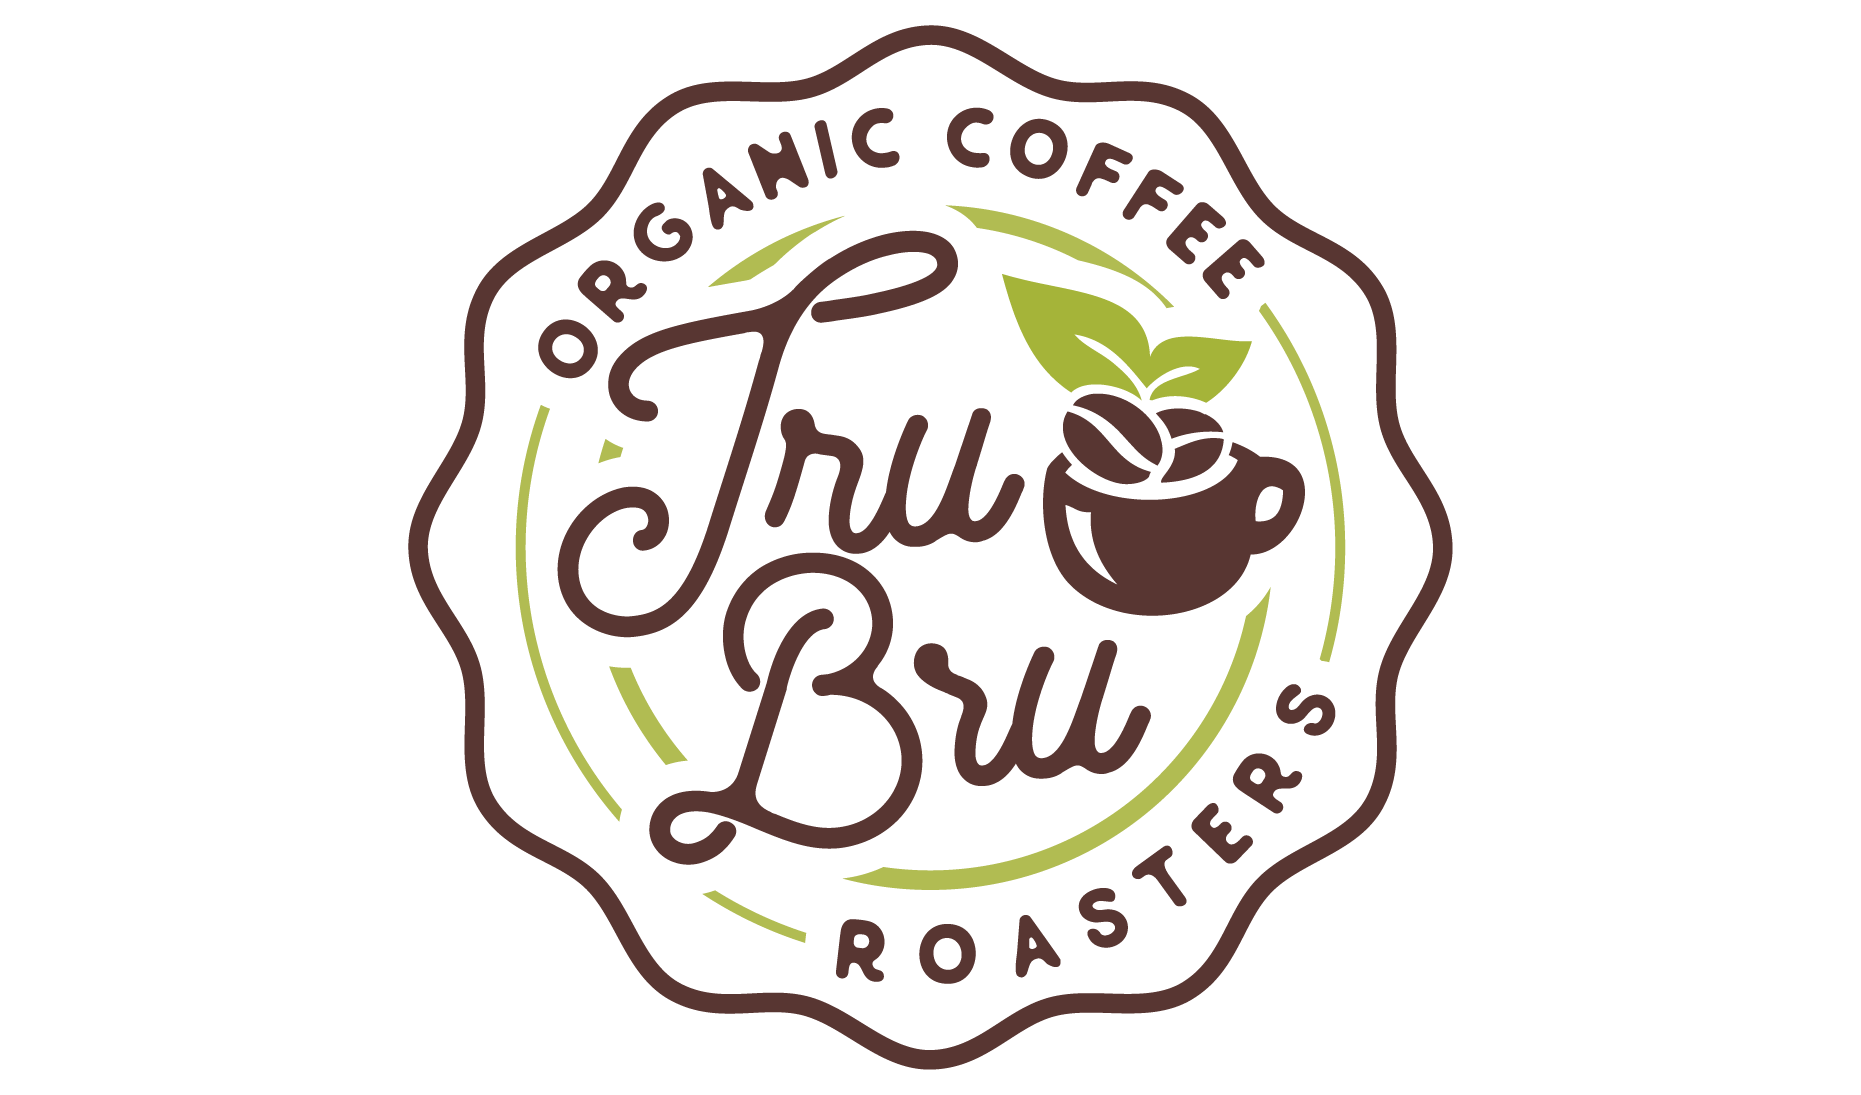 TRU Pour Over Coffee Maker